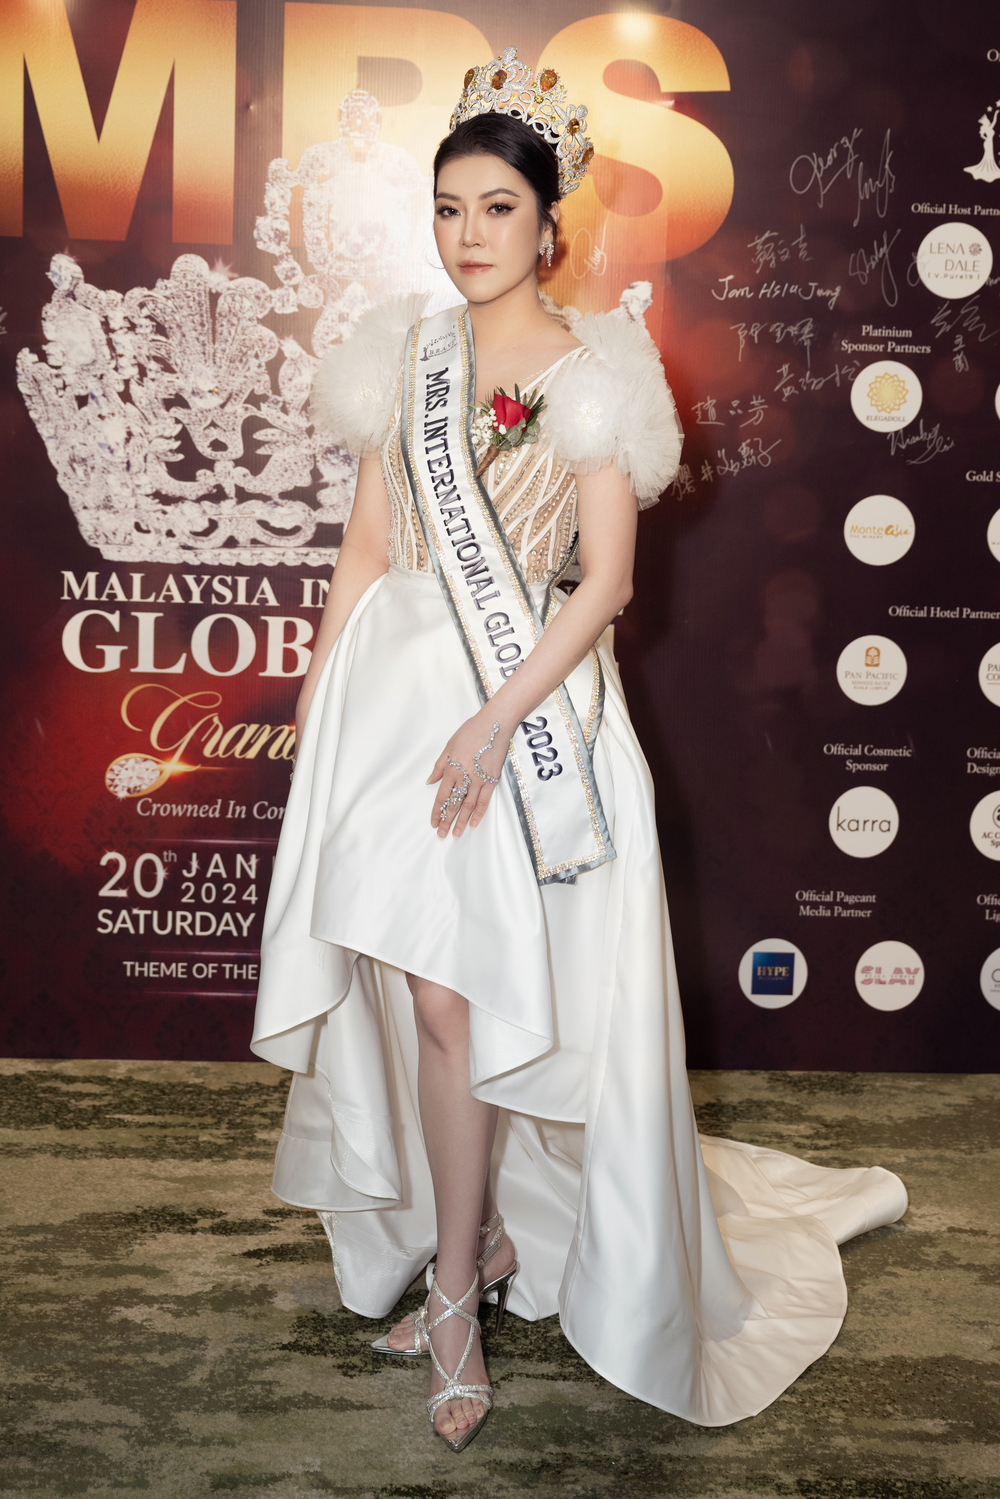 Hoa hậu Trần Hà Trâm Anh, CEO Vũ Thái “xuất khẩu” đầu năm sang Mã Lai để chấm thi - Ảnh 2.